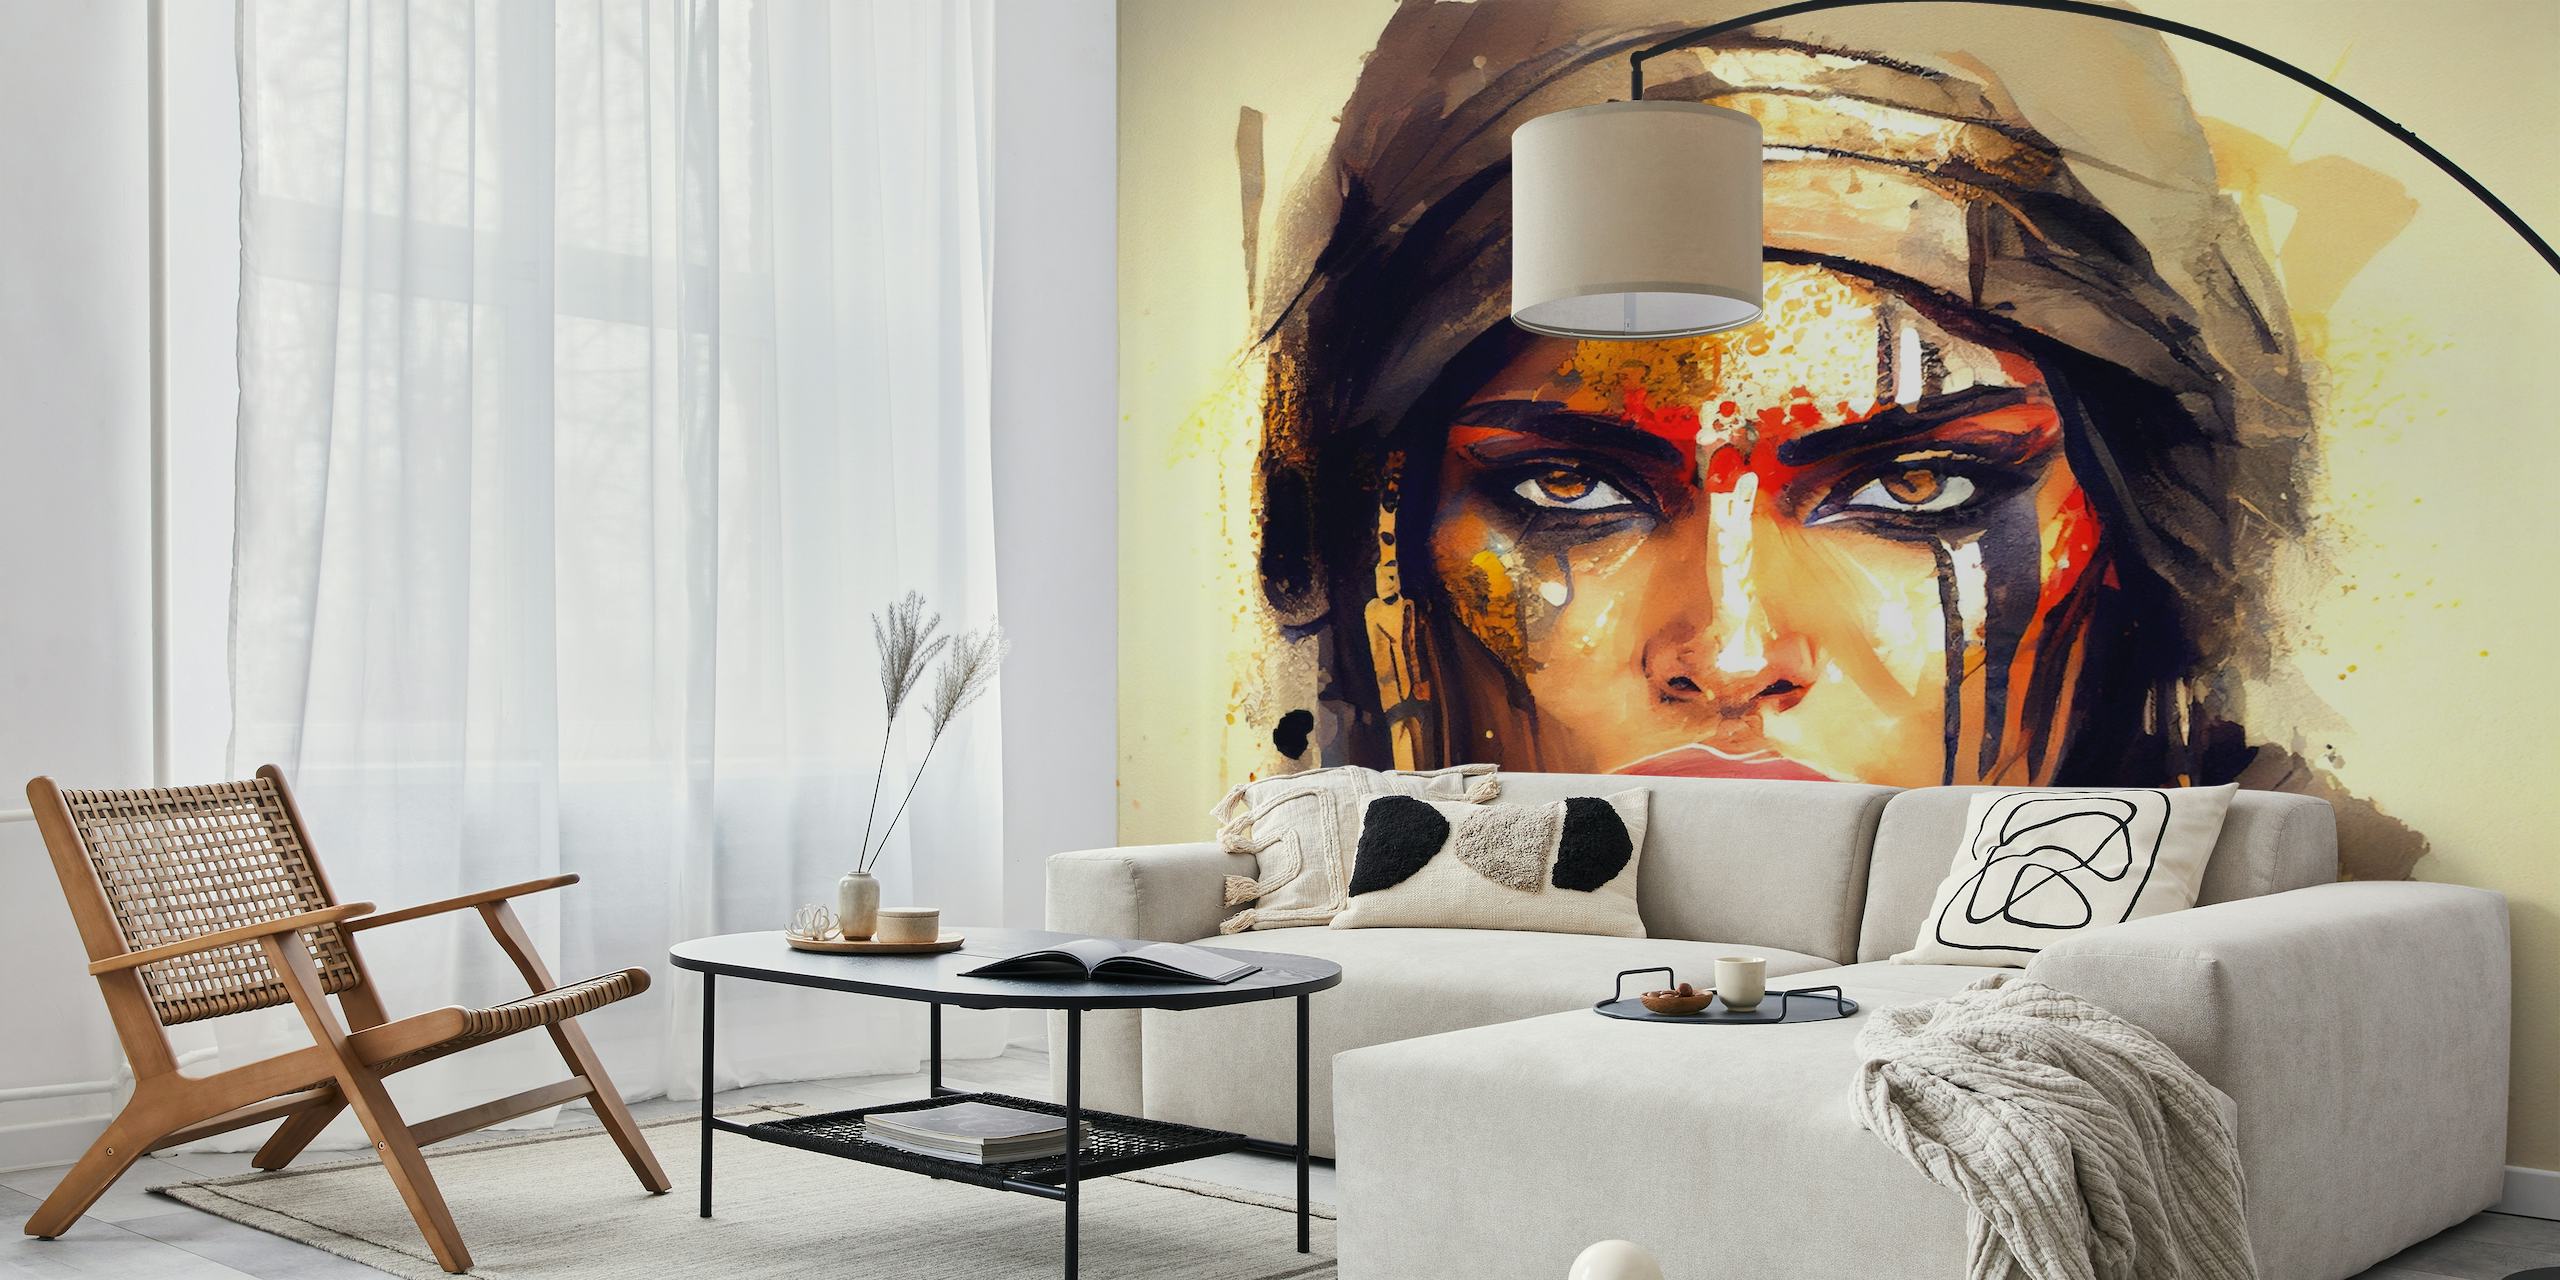 Representação artística de uma poderosa guerreira egípcia com pintura facial ousada e expressão determinada.